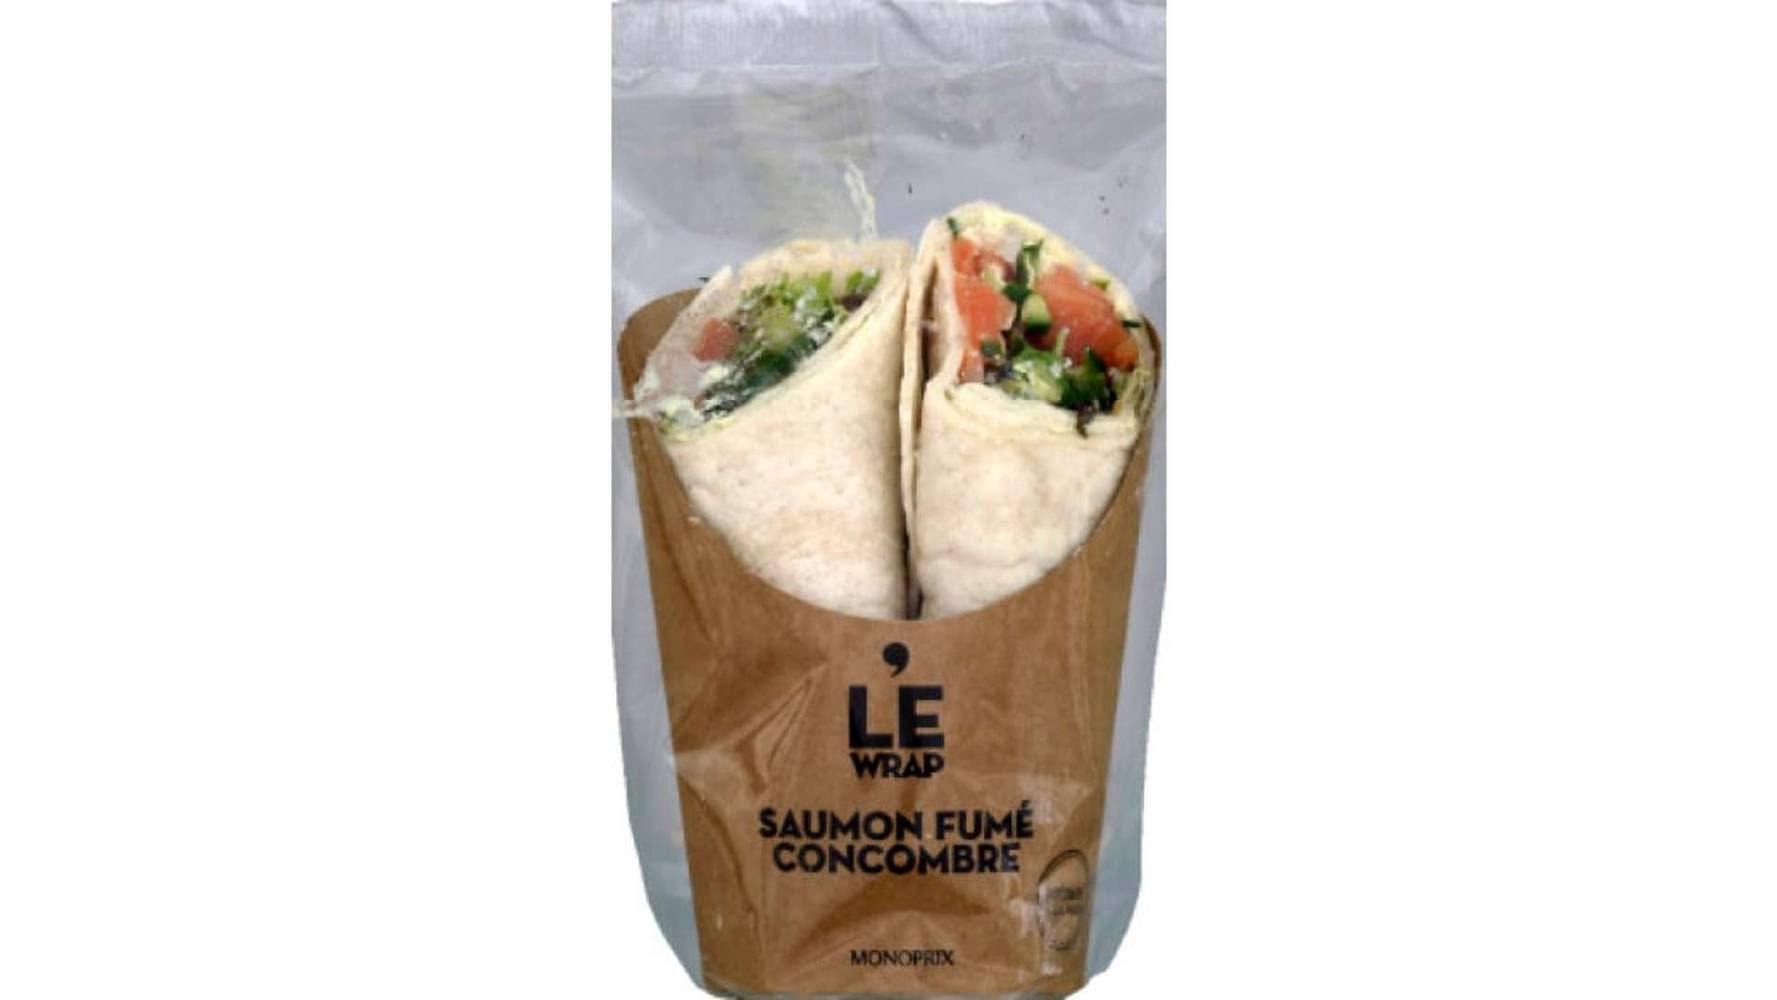 Monoprix Wrap saumon fume concombre - Le Wrap Le paquet de 210 g